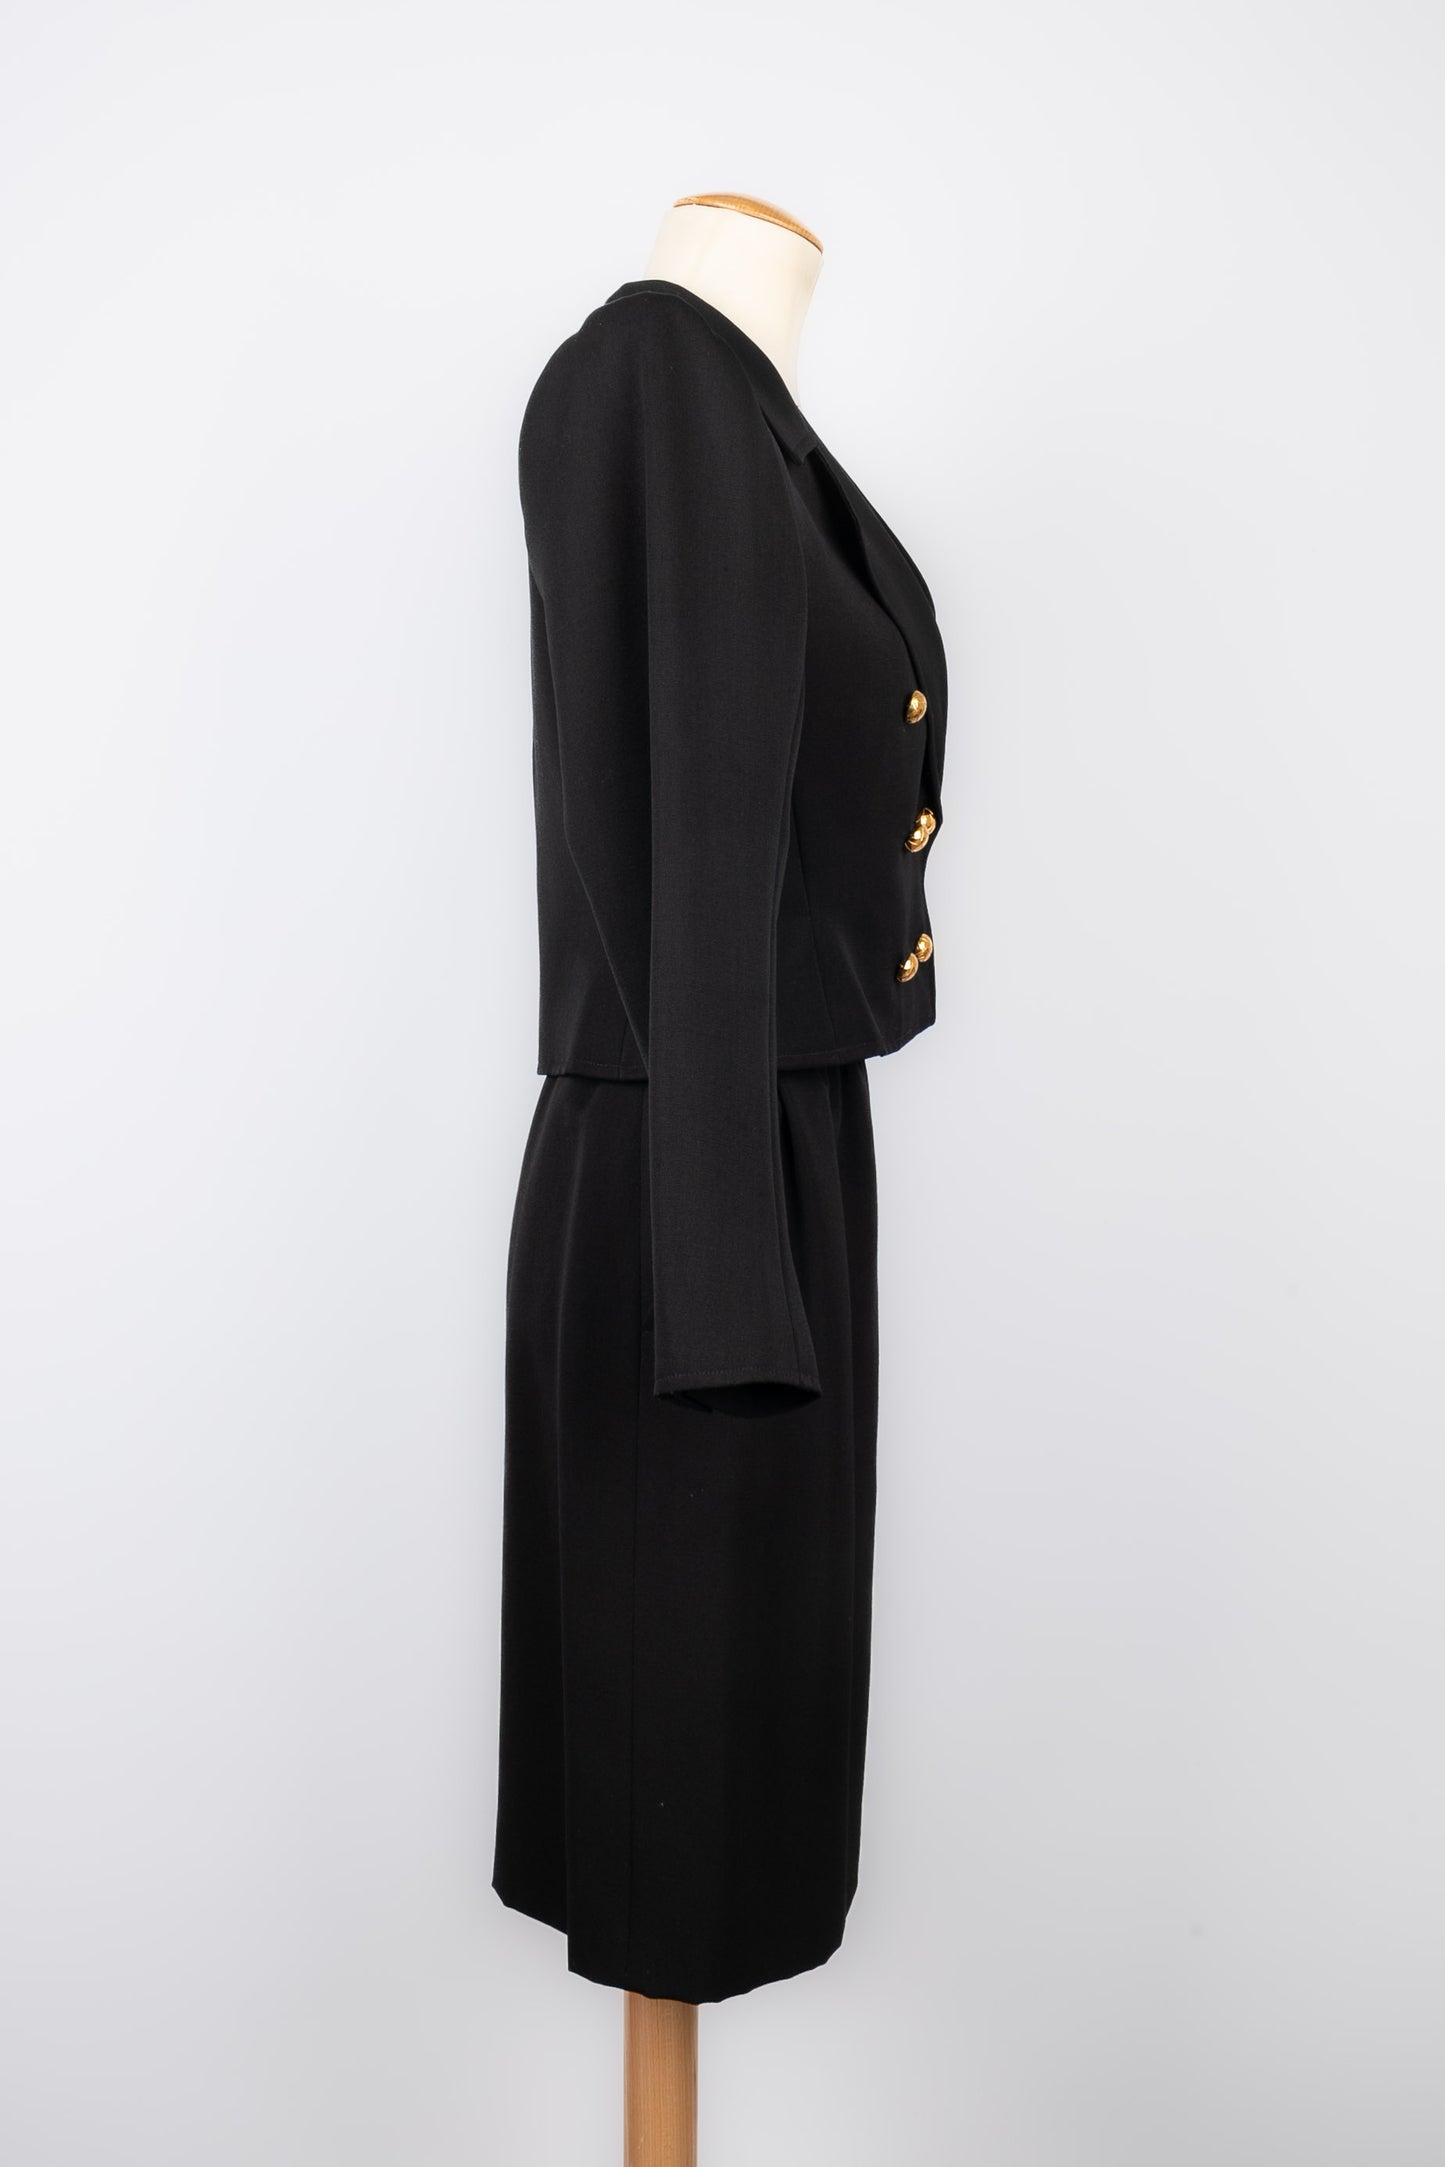 Tailleur Yves Saint Laurent Haute Couture